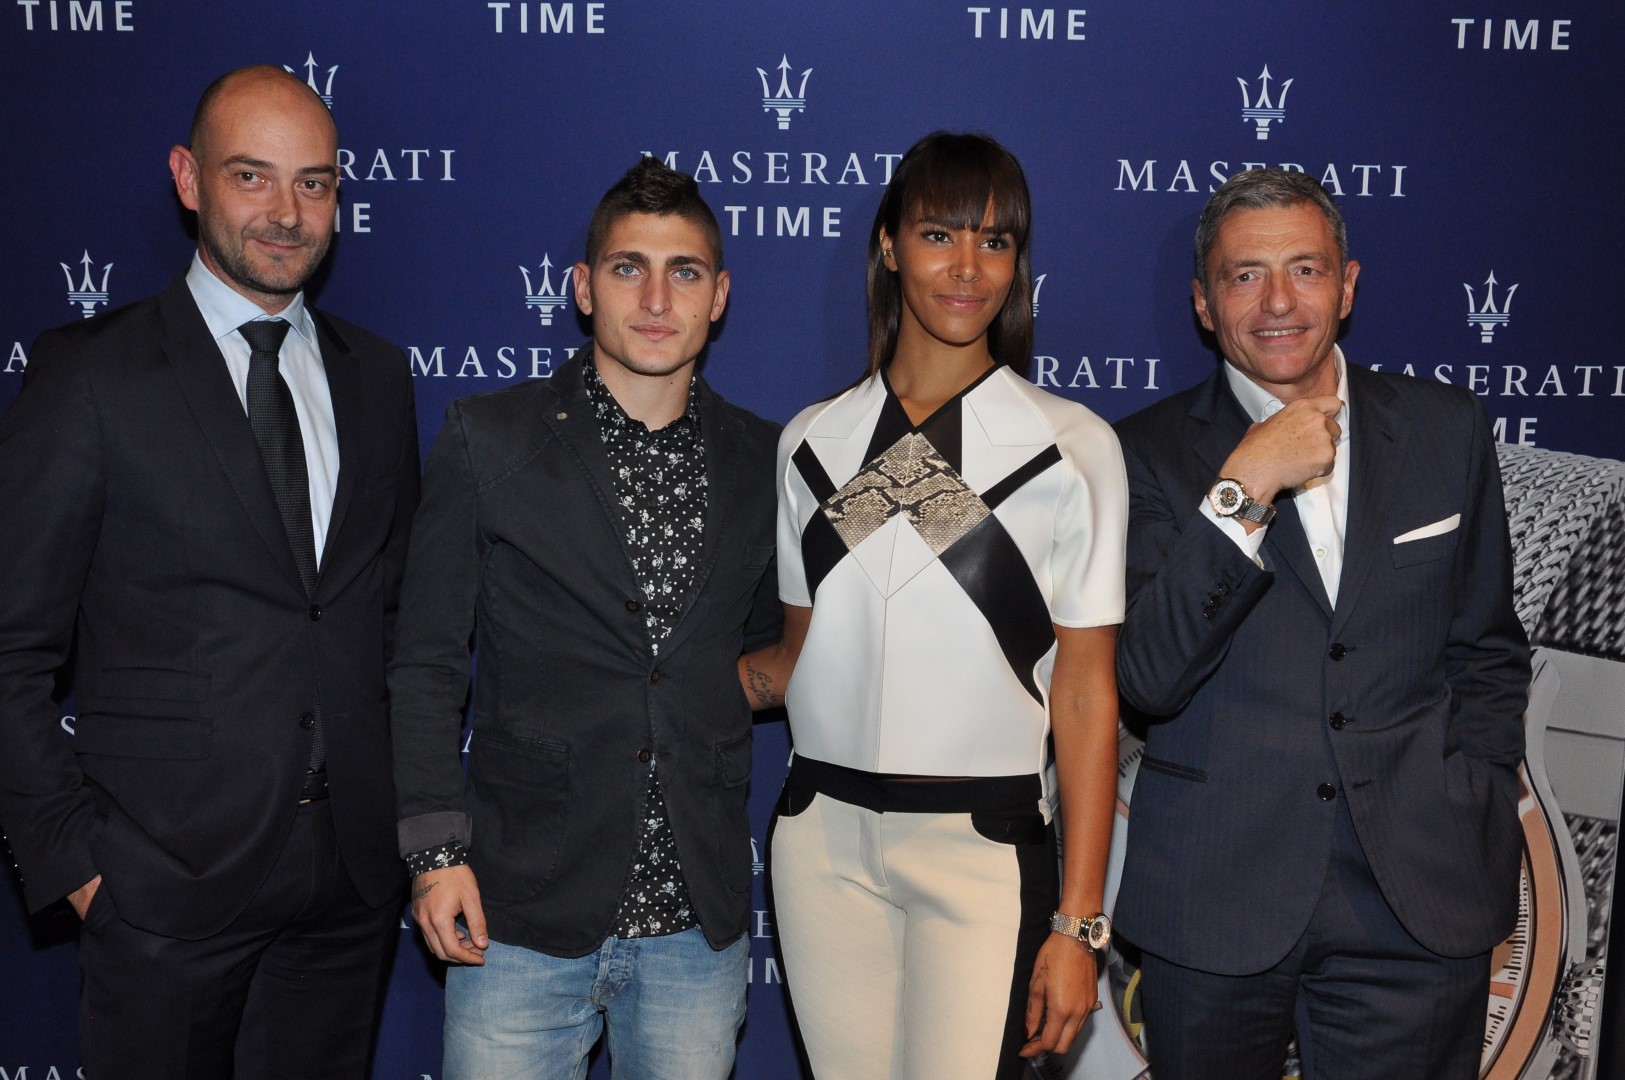 Maserati orologi 2015: il nuovo modello Epoca skeleton, guest Shy’m e Marco Verratti